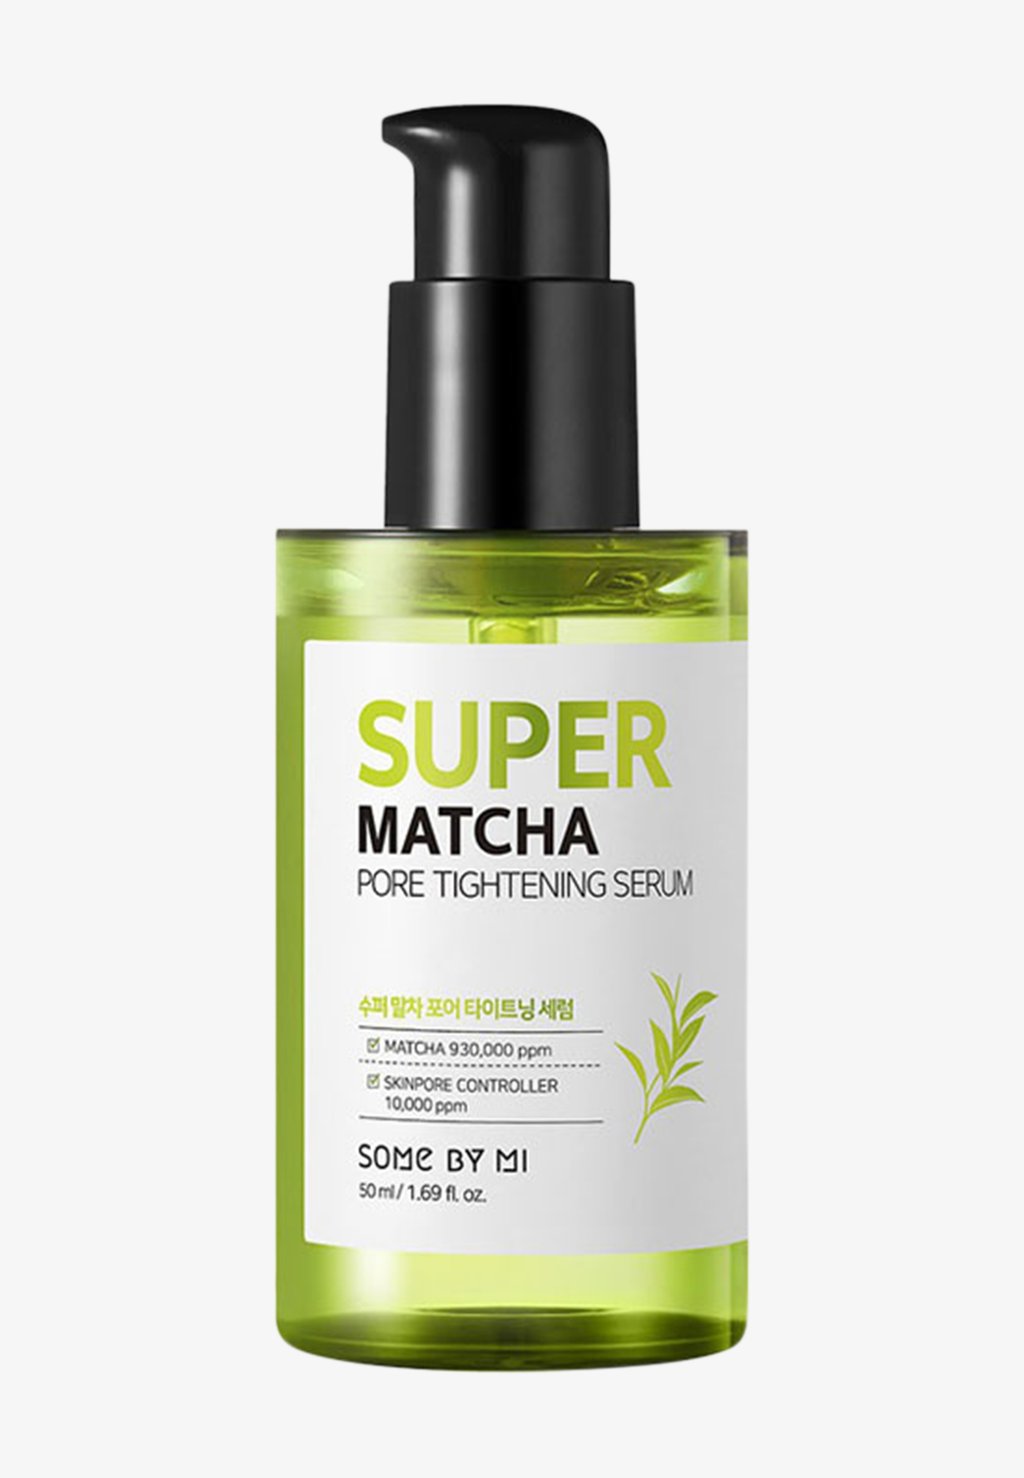 Сыворотка Super Matcha Pore Tightening Serum SOME BY MI сыворотка some by mi matcha pore tightening serum 50 мл